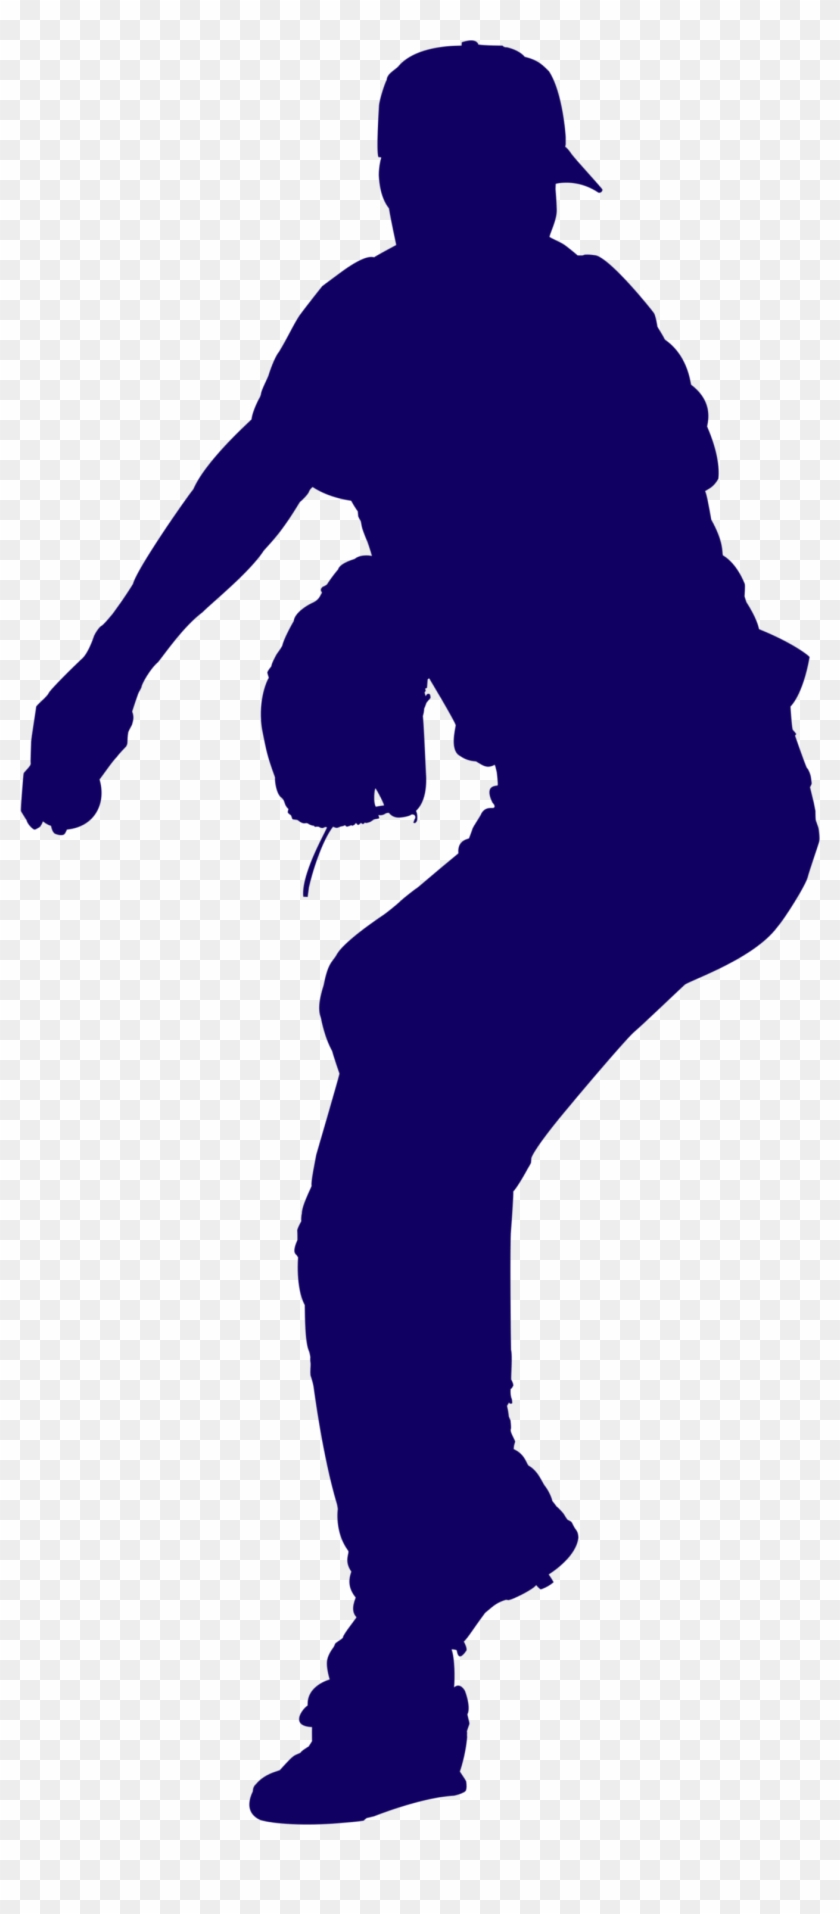 Baseball Pitcher Blue Silhouette - Pitcher De Beisbol Png Clipart #3643898